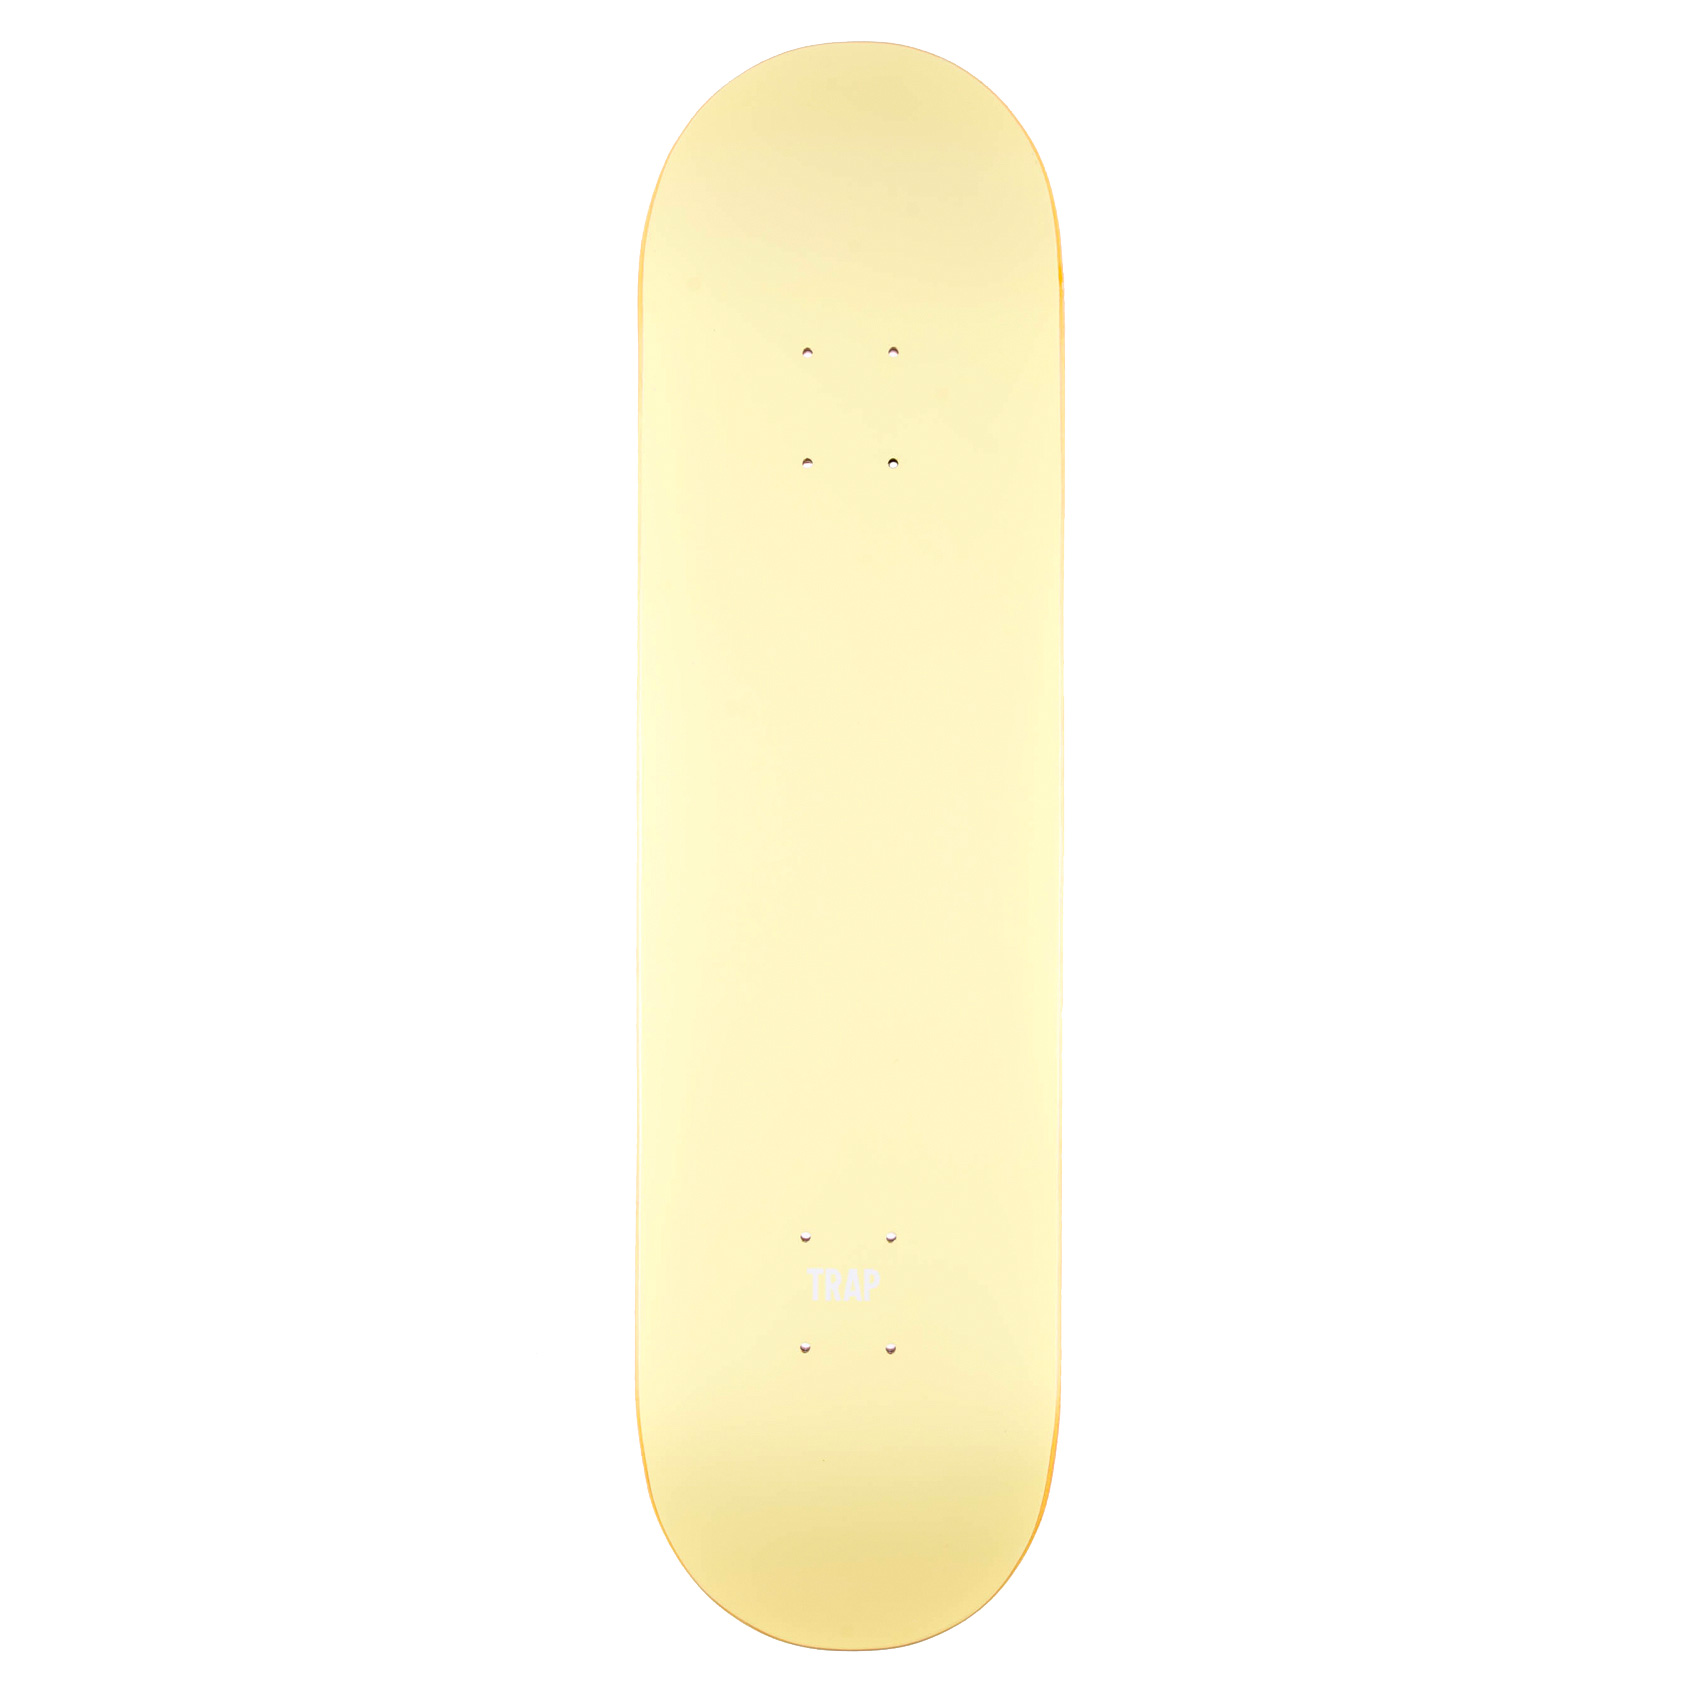 Trap Skateboard Deck Monochrome Series 8.5" (yellow)